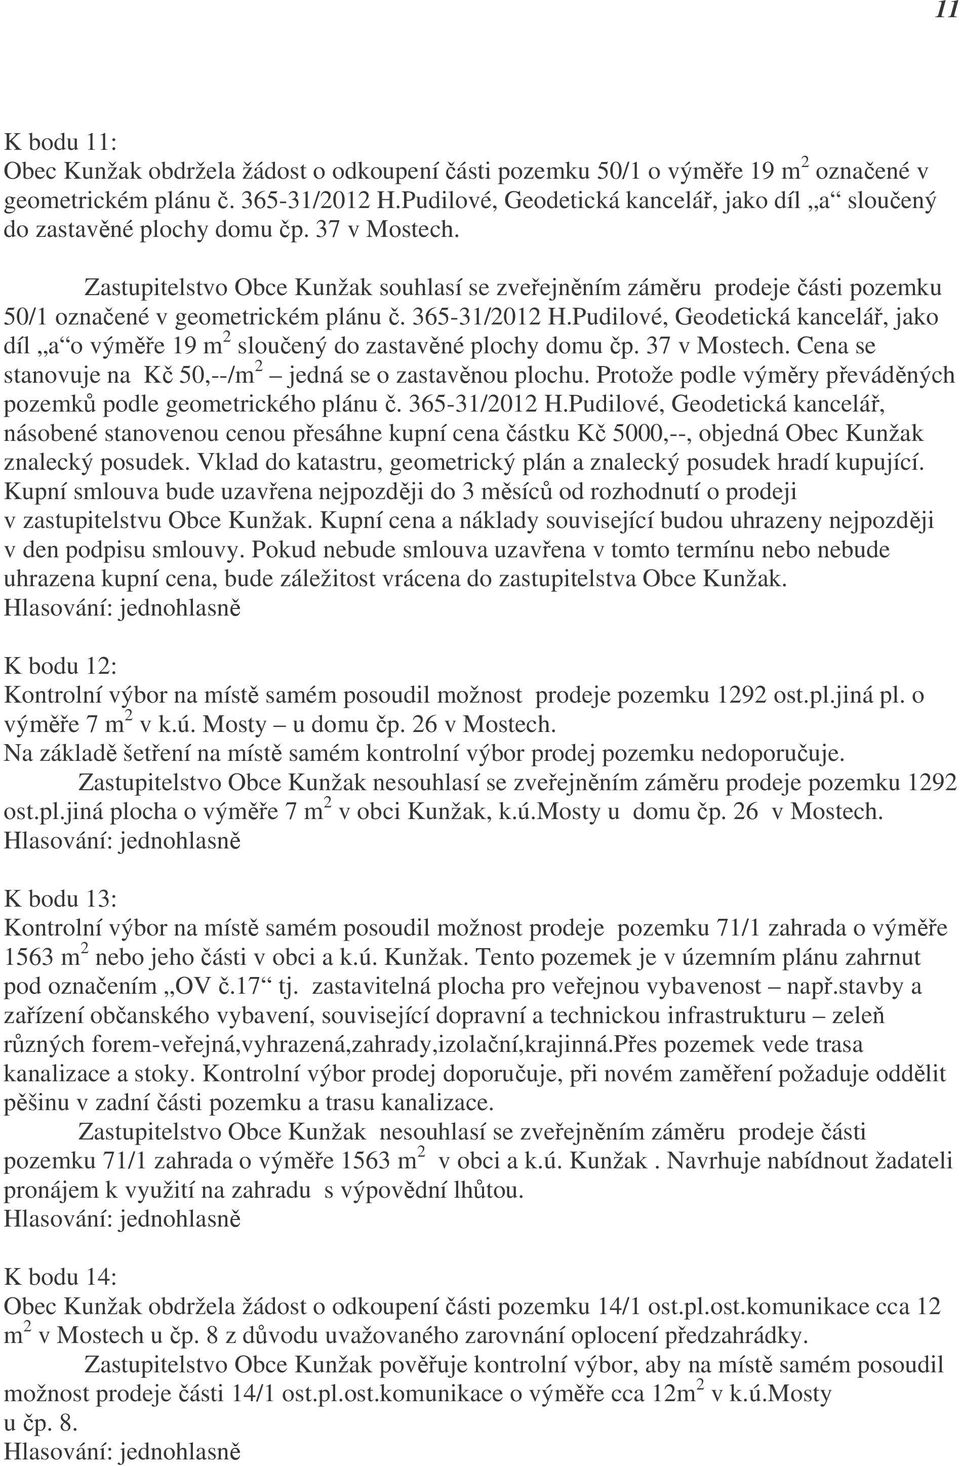 Zastupitelstvo Obce Kunžak souhlasí se zveřejněním záměru prodeje části pozemku 50/1 označené v geometrickém plánu č. 365-31/2012 H.